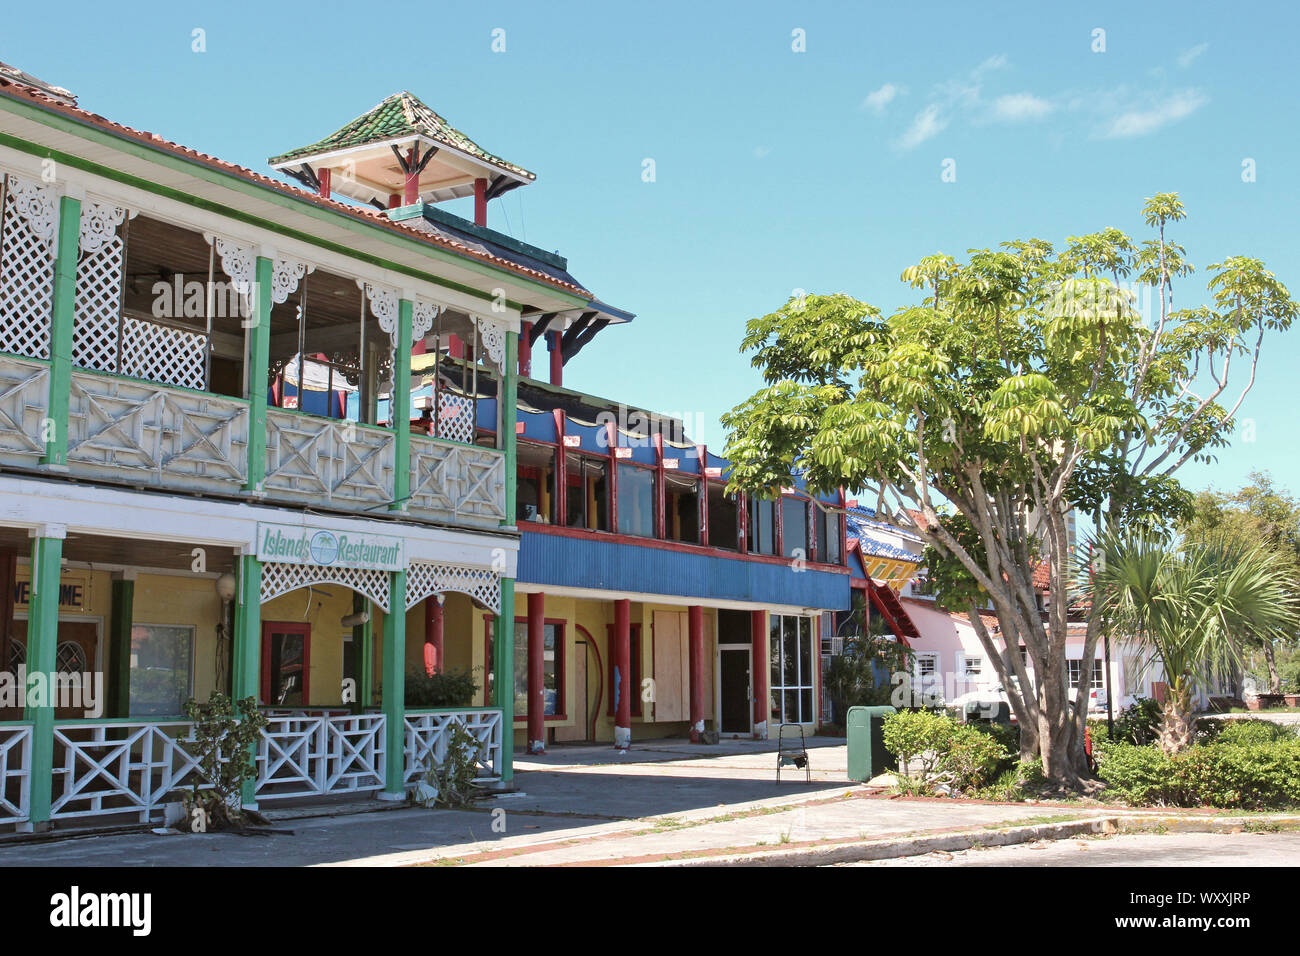 Die internationale Basar, Freeport, Grand Bahama Island. Vieles davon ist aus Holz und bereits in früheren Hurrikane im Dorian beschädigt. Verfallene Stockfoto